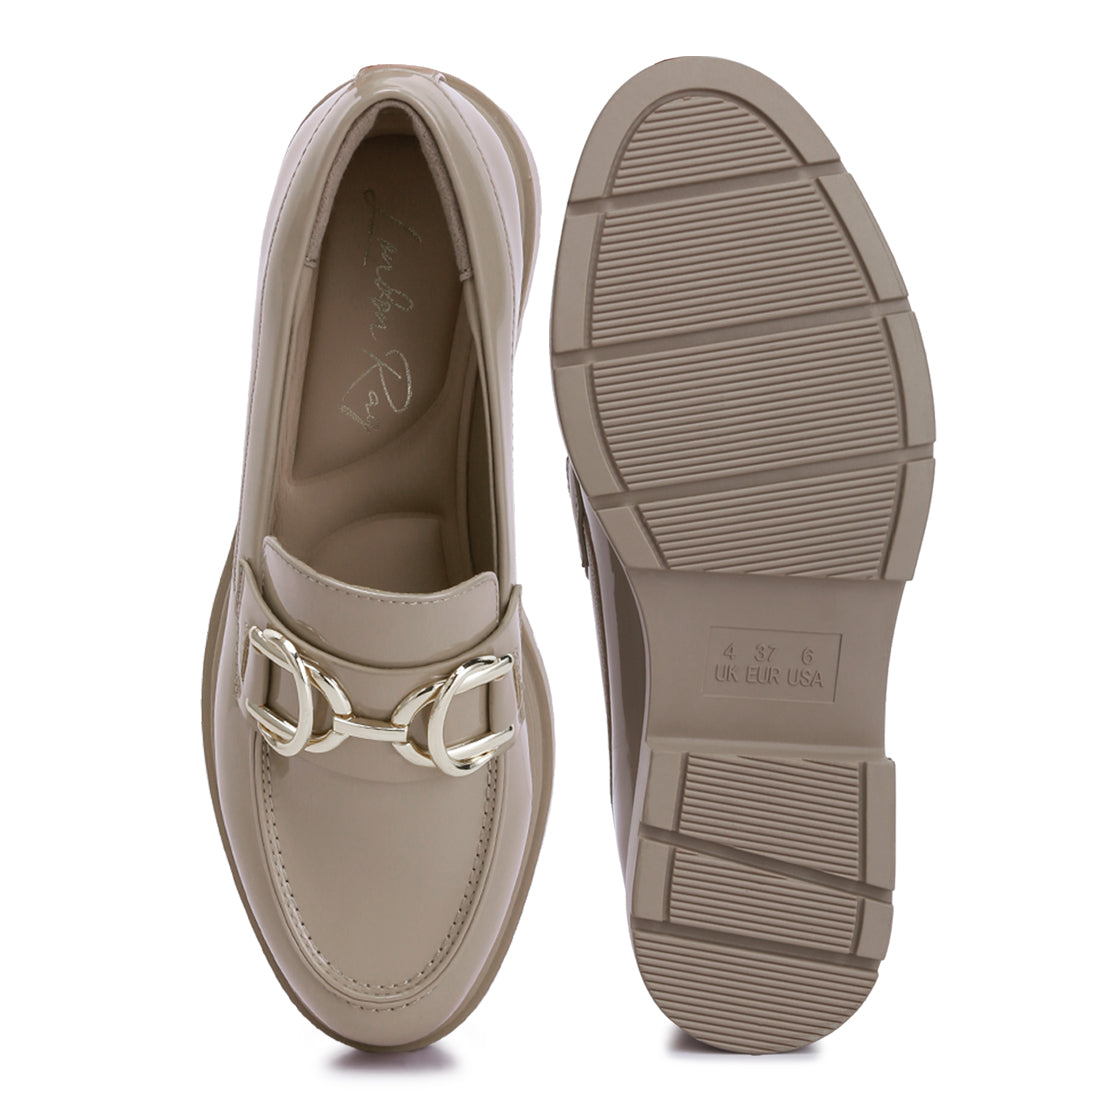 horsebit embellished platform loafers#color_beige